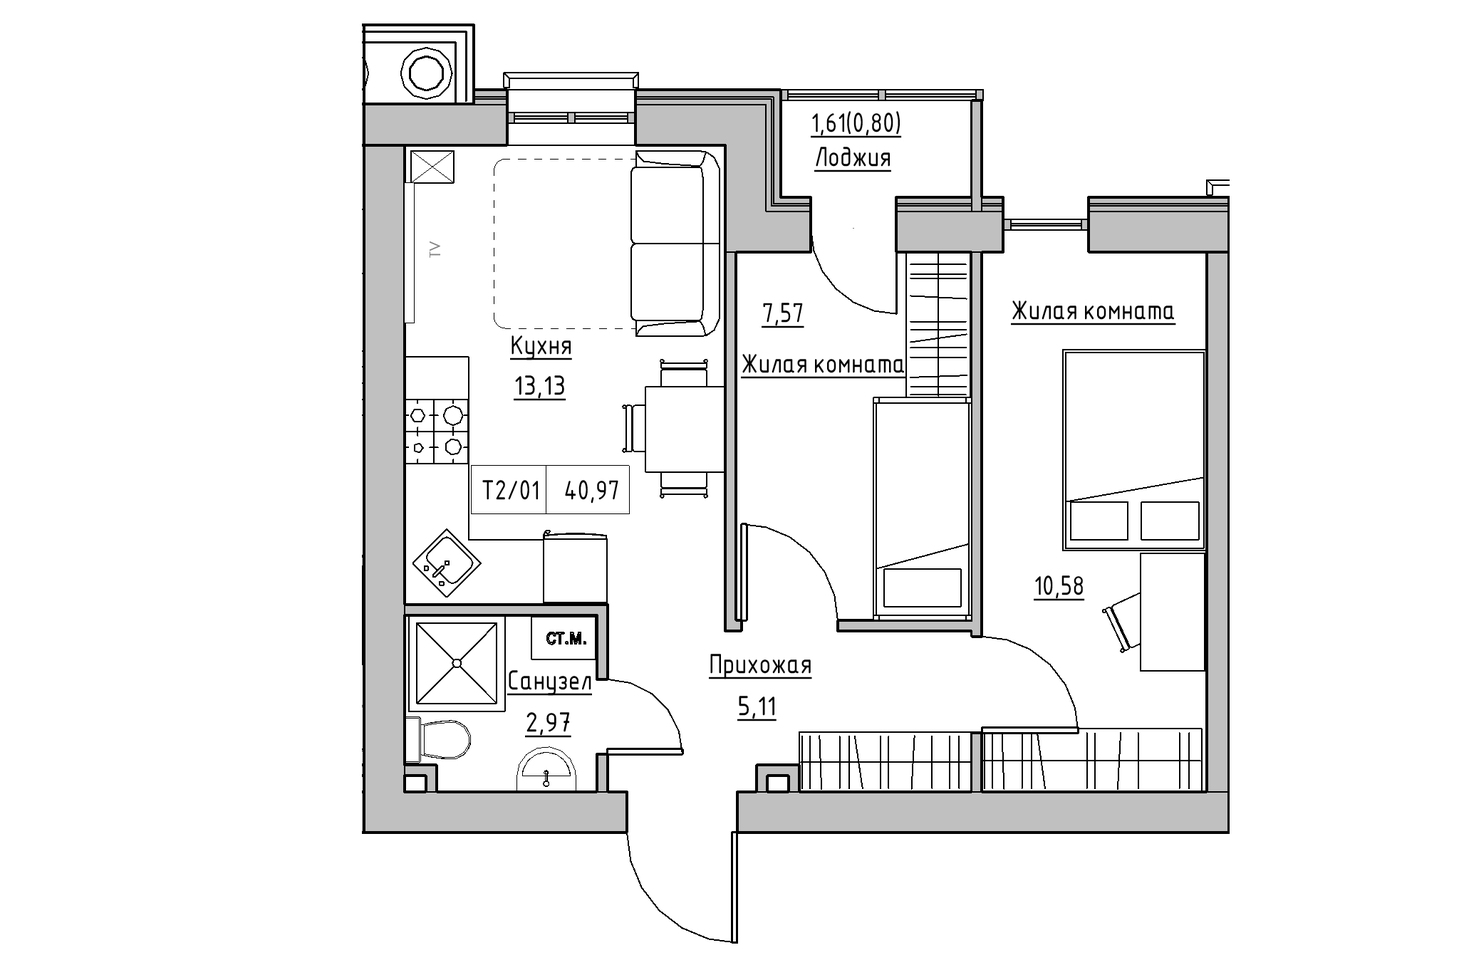 Планування 2-к квартира площею 40.97м2, KS-009-01/0009.